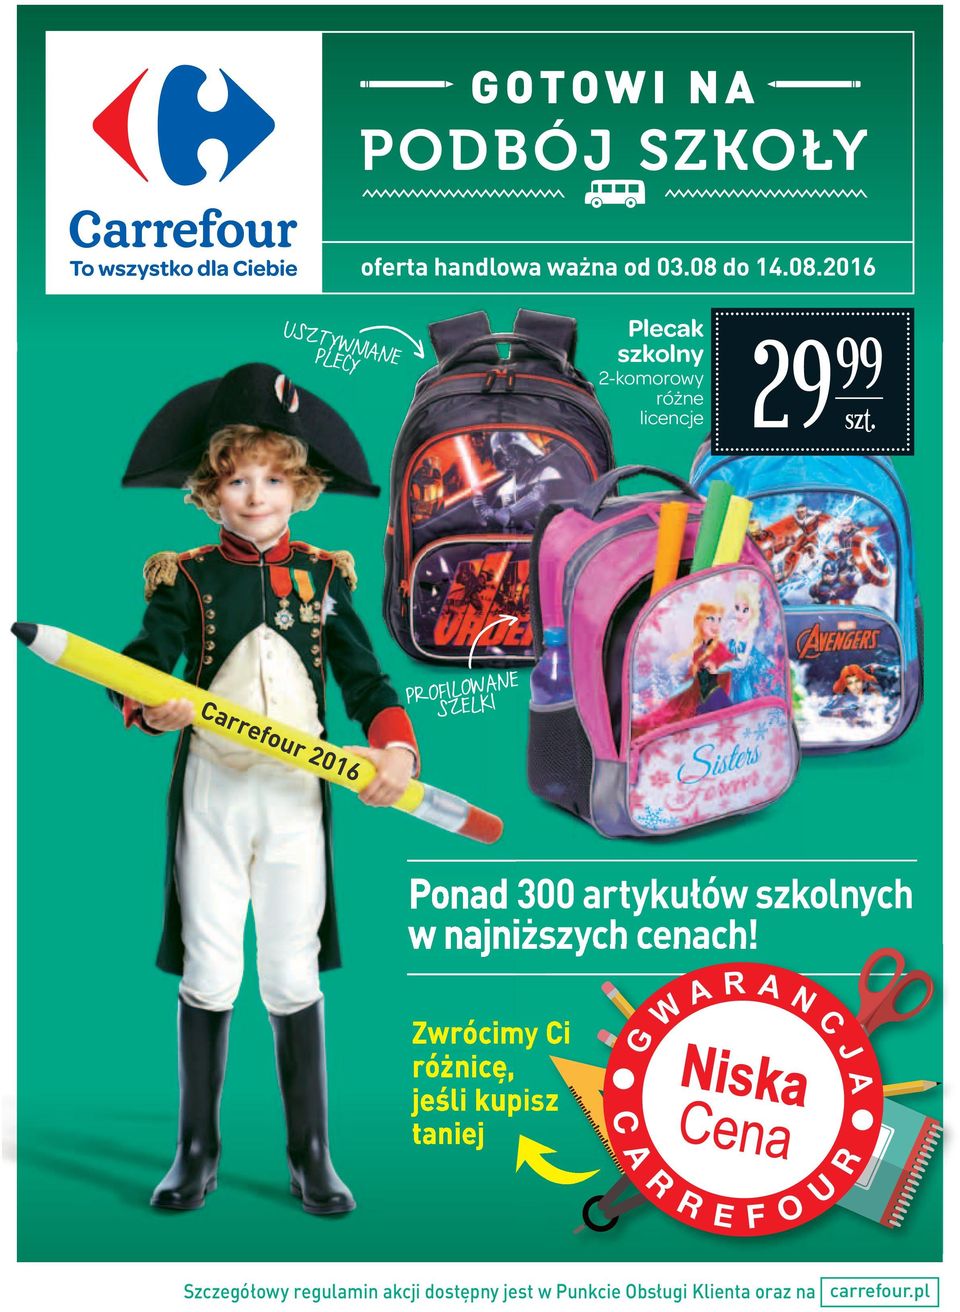 2016 USZTYWNIANE PLECY szkolny 2-komorowy różne licencje 29 Carrefour 2016 Carrefour